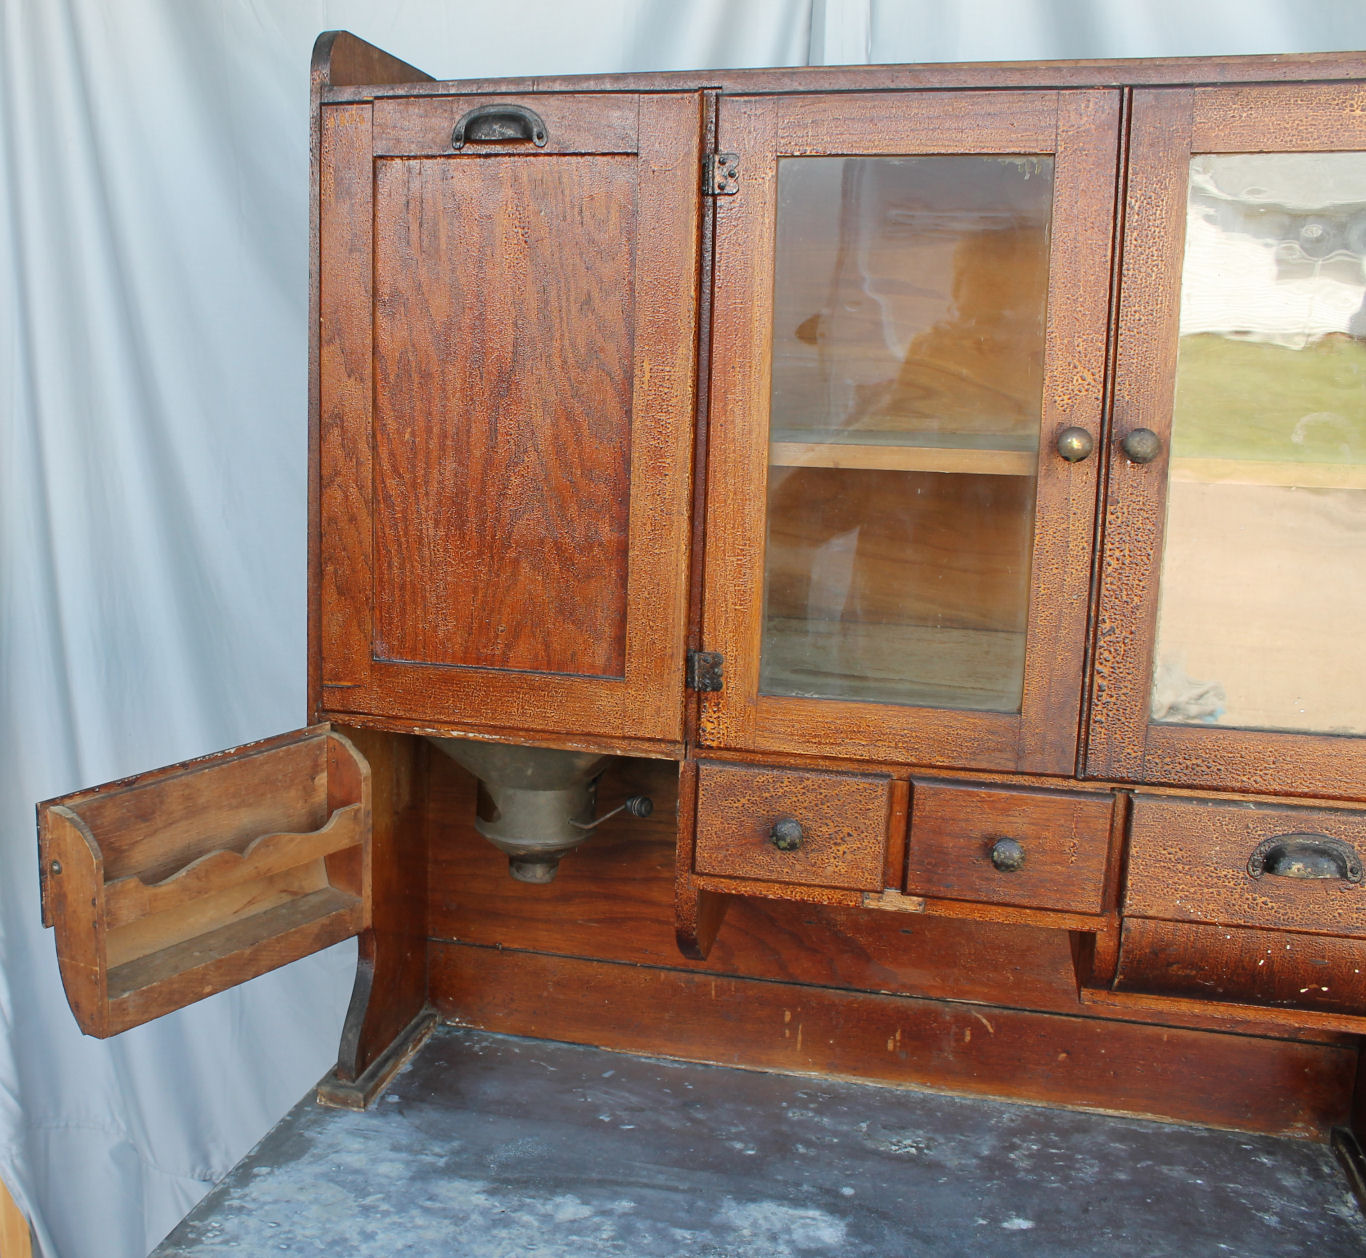 Bargain John's Antiques » Blog Archive Antique Oak Kitchen Cabinet